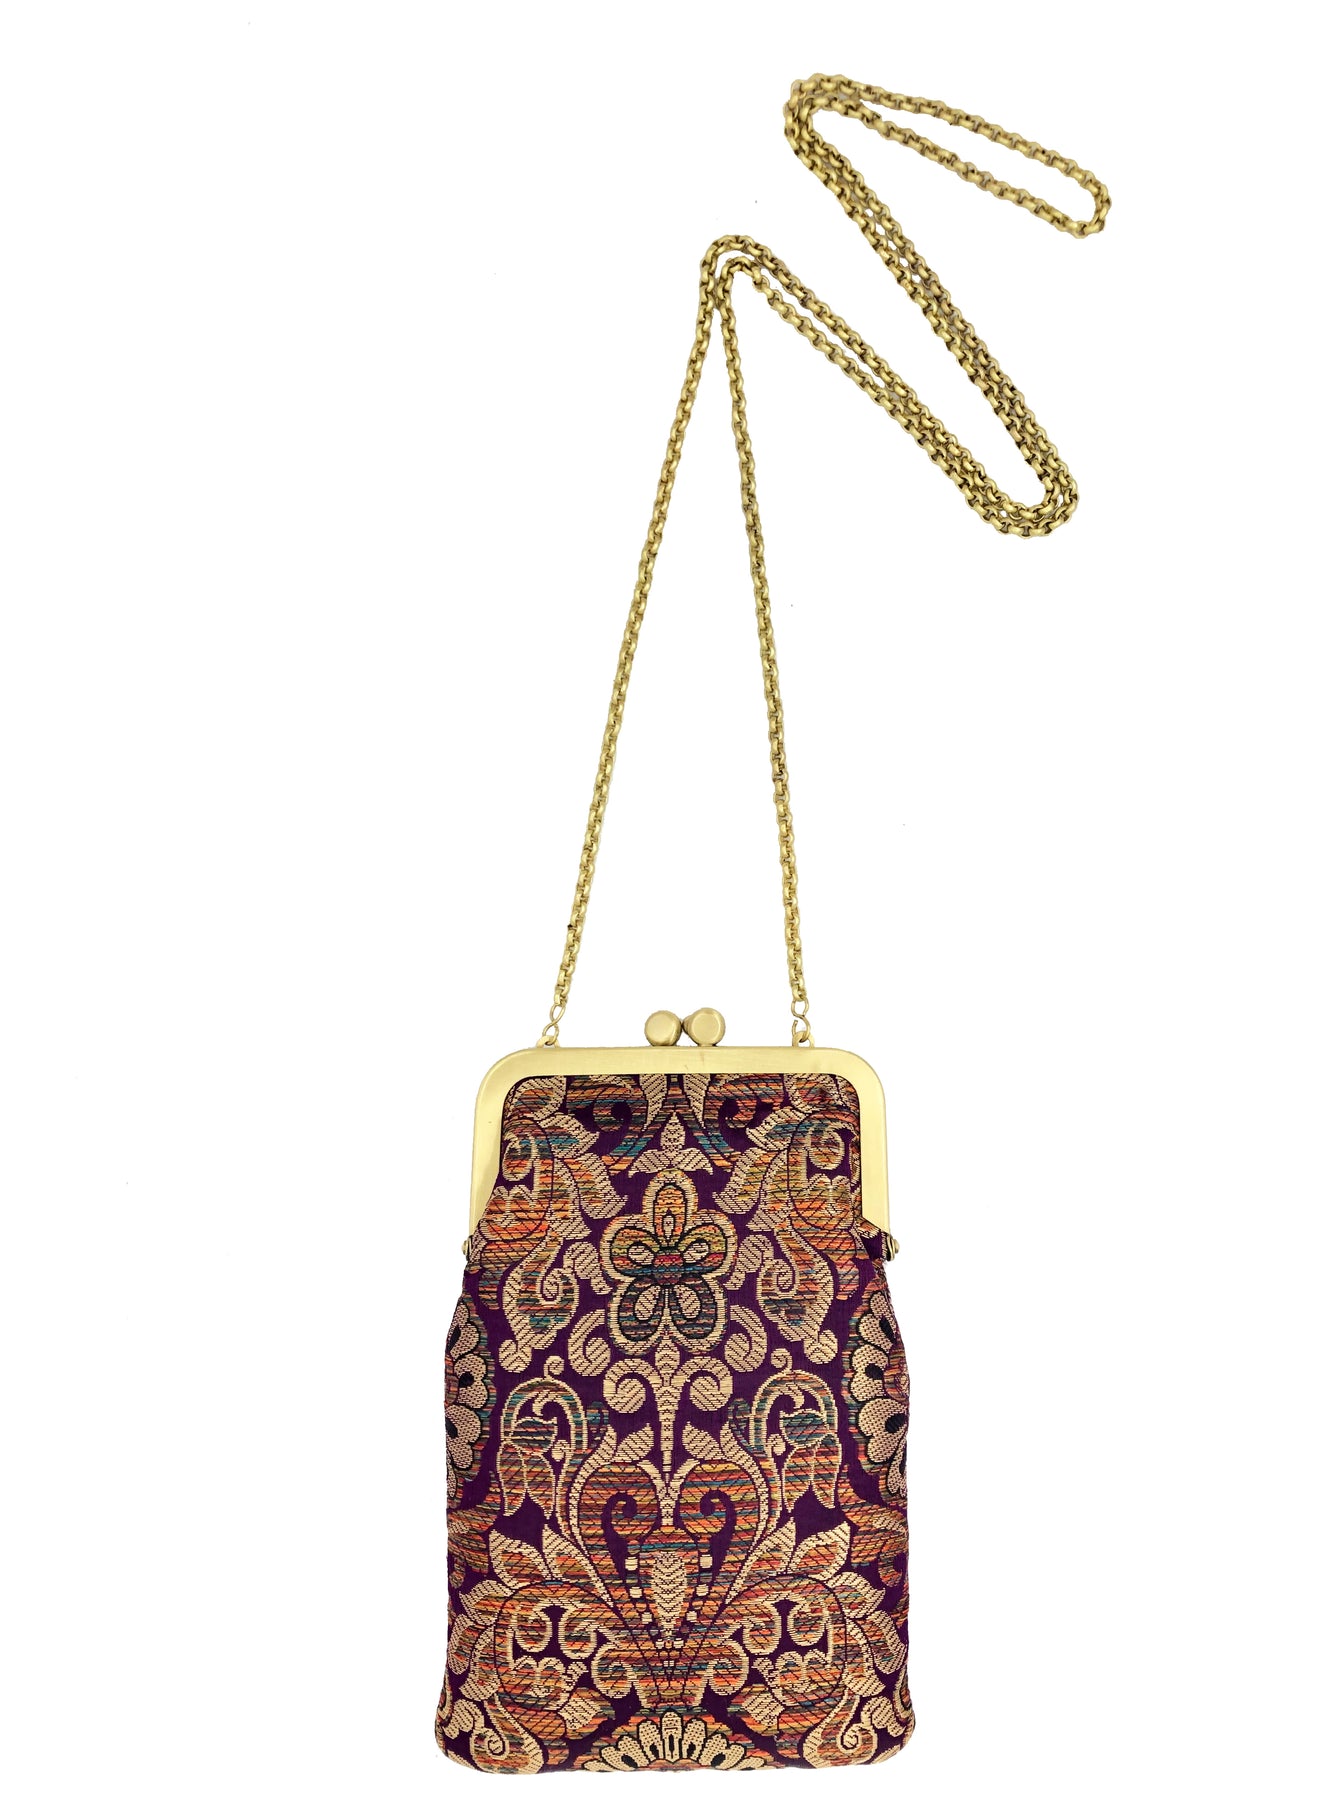 Mini Clutch Bags – That Gypsy